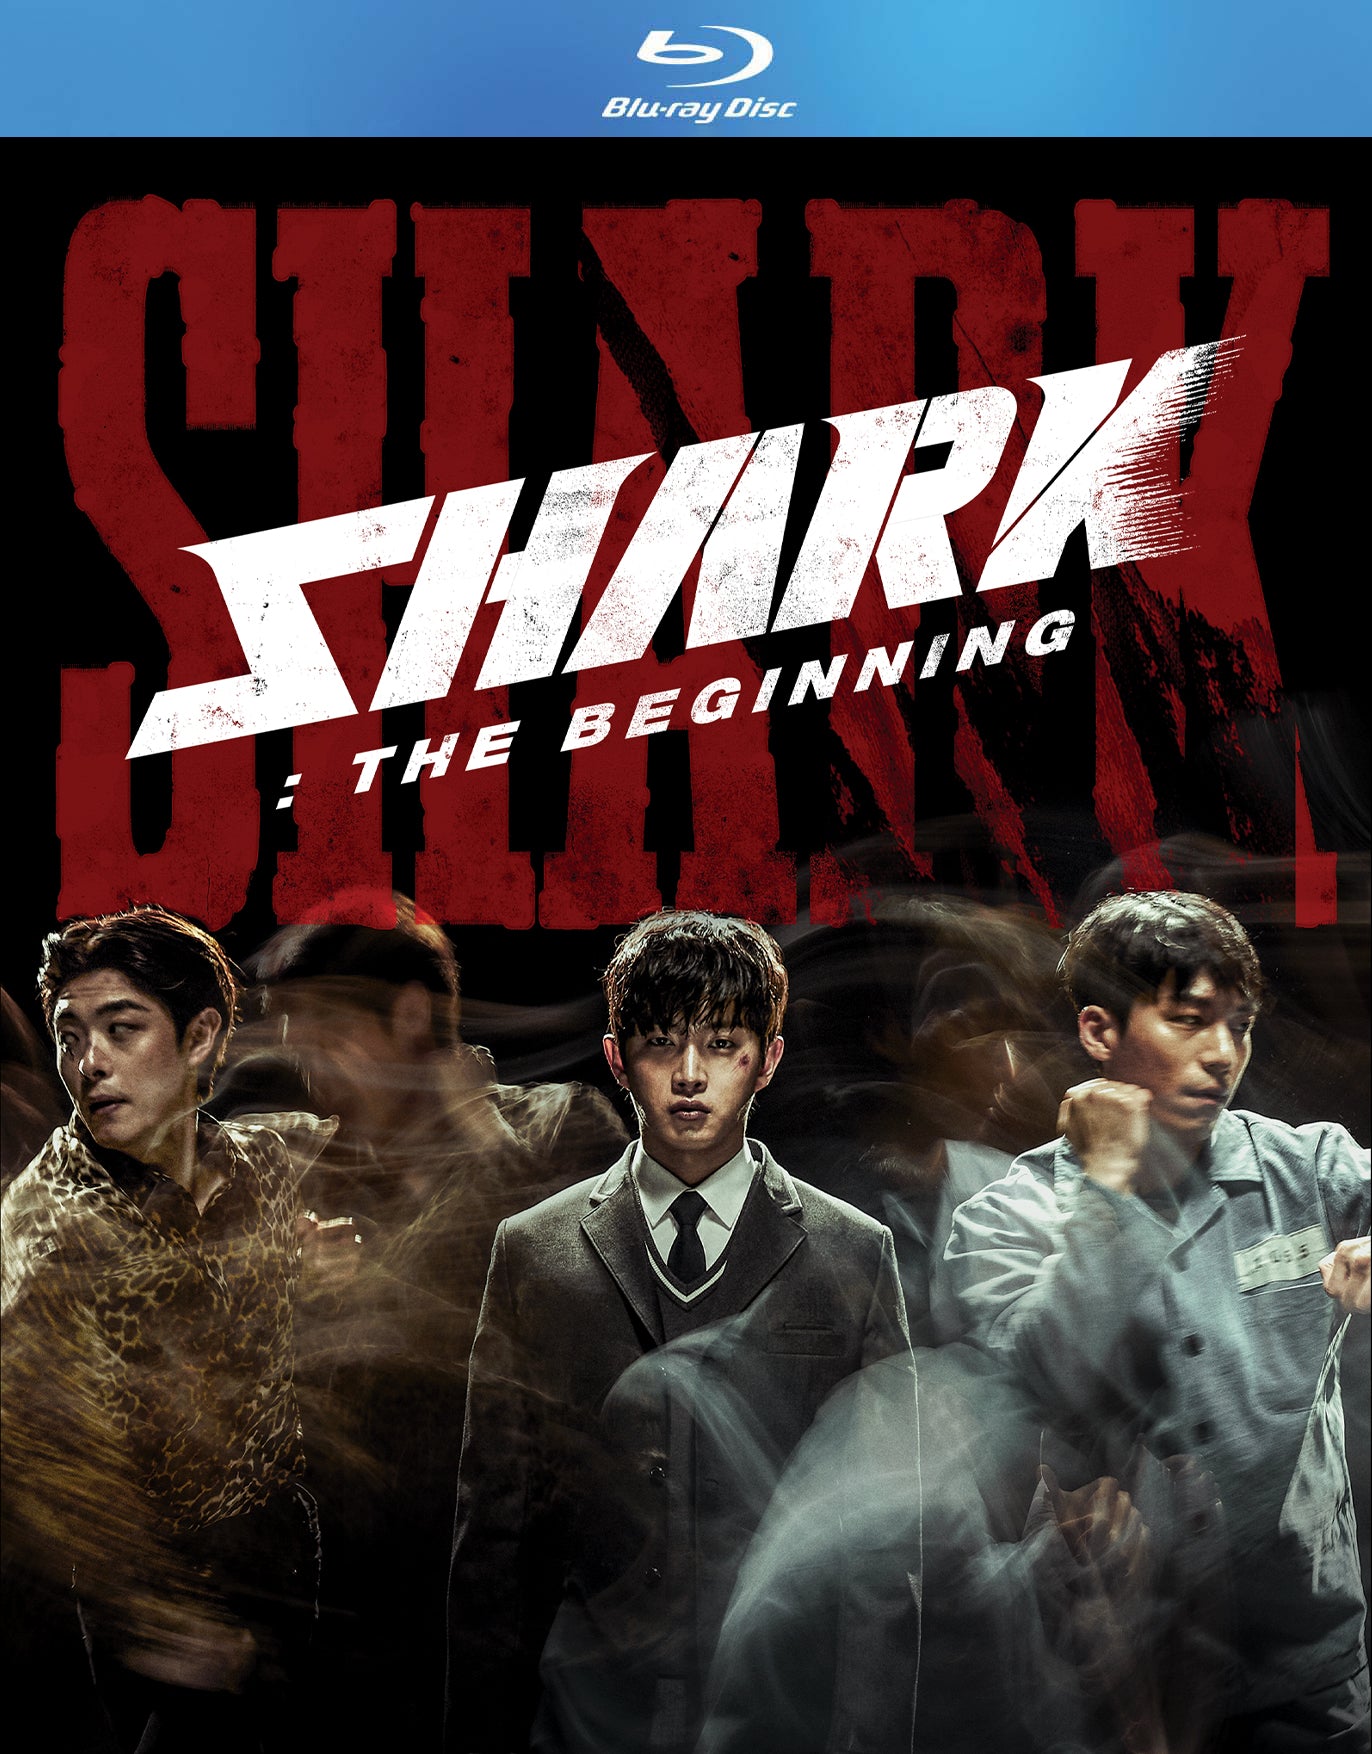 SHARK: THE BEGINNING [BD]